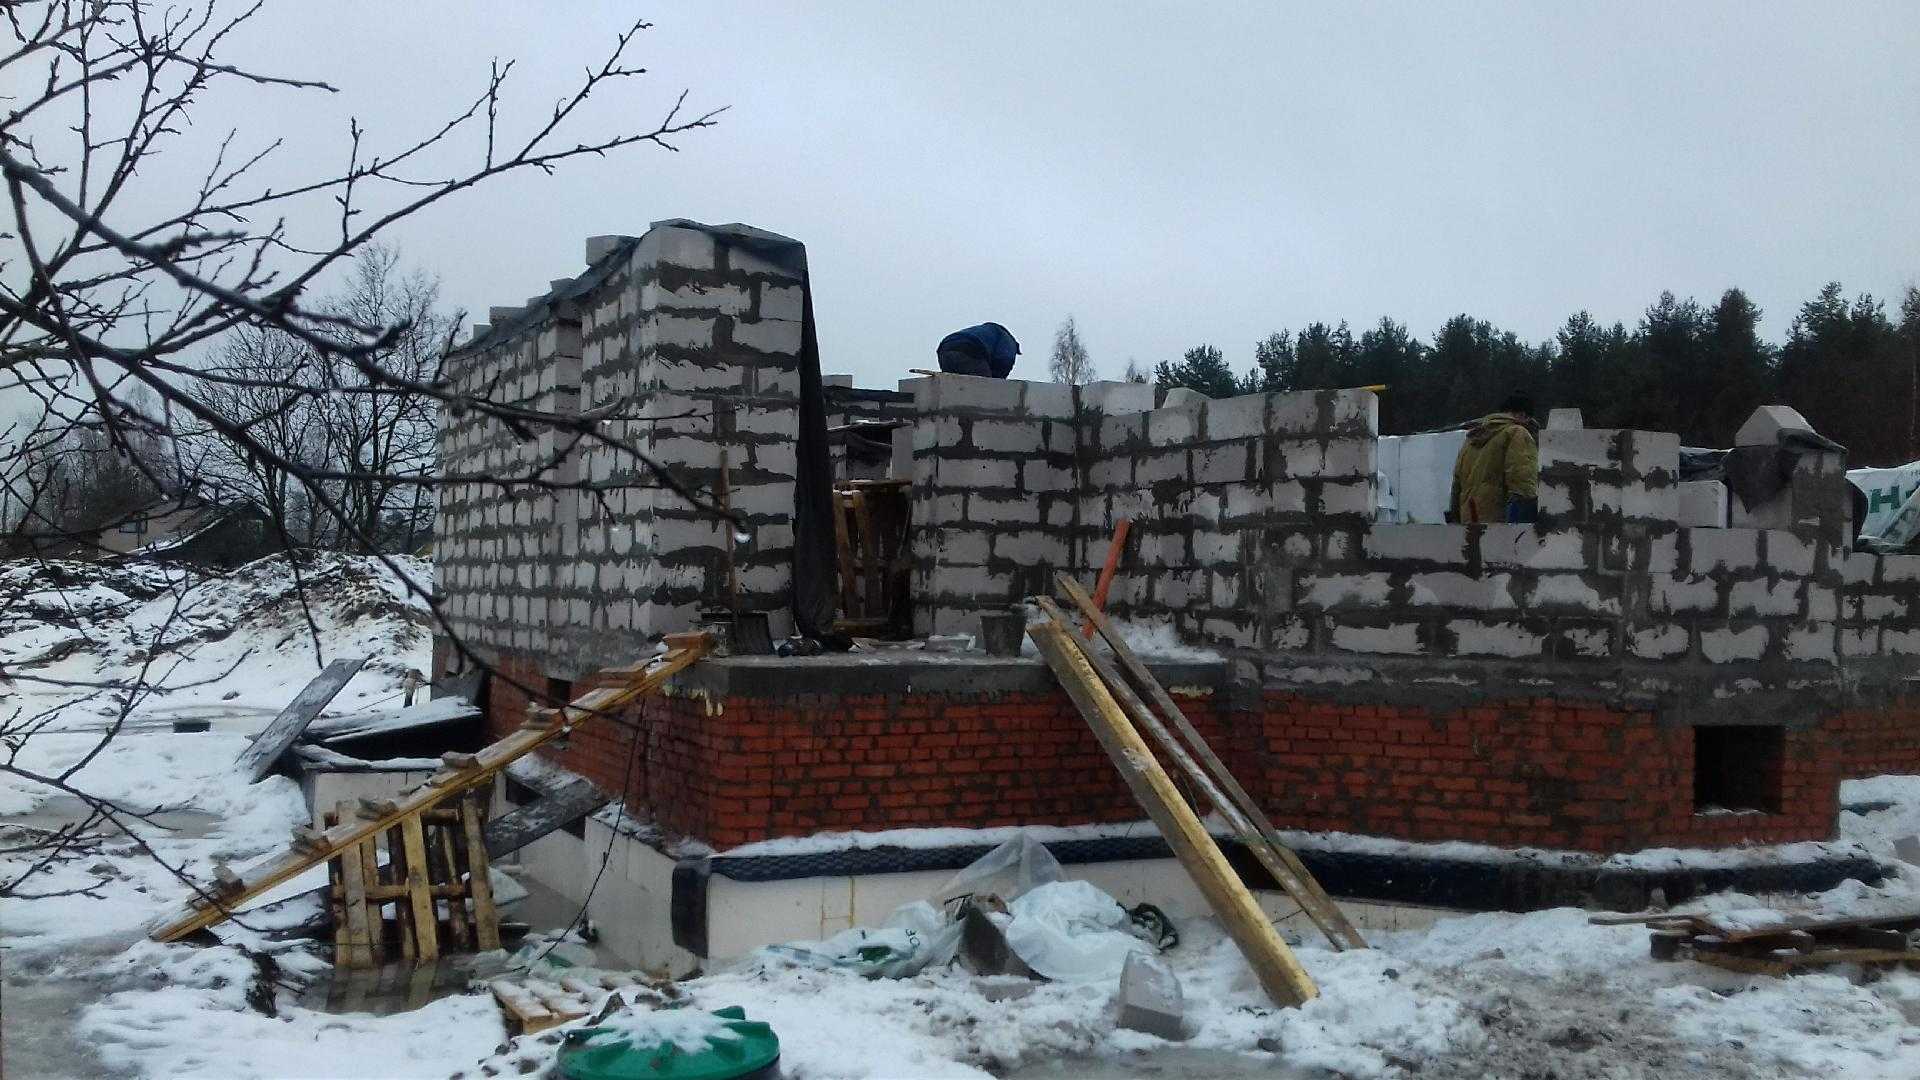 Не дать зиме раскрошить фундамент и снести крышу. консервируем стройку.